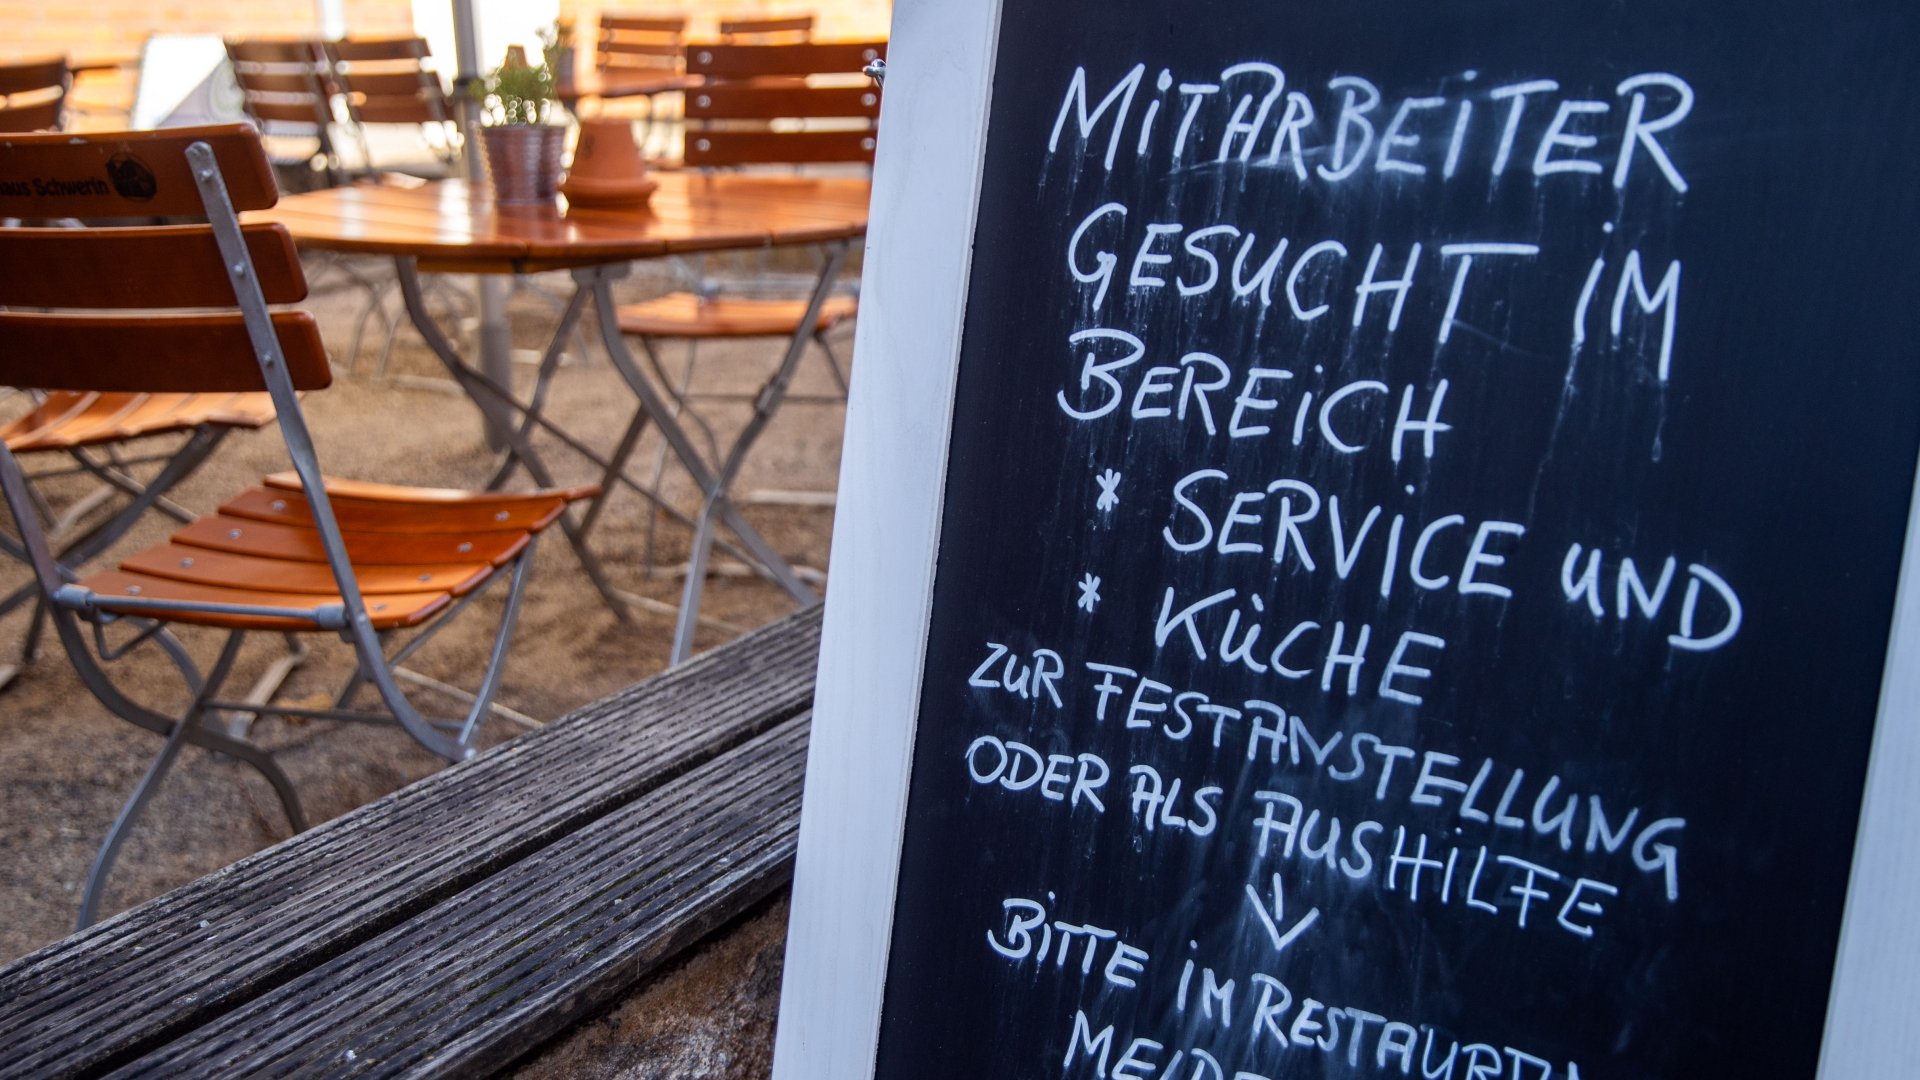 Auf einer Tafel vor einem Restaurant in Schwerin wird nach Mitarbeitern für den Service- und Küchenbereich gesucht.